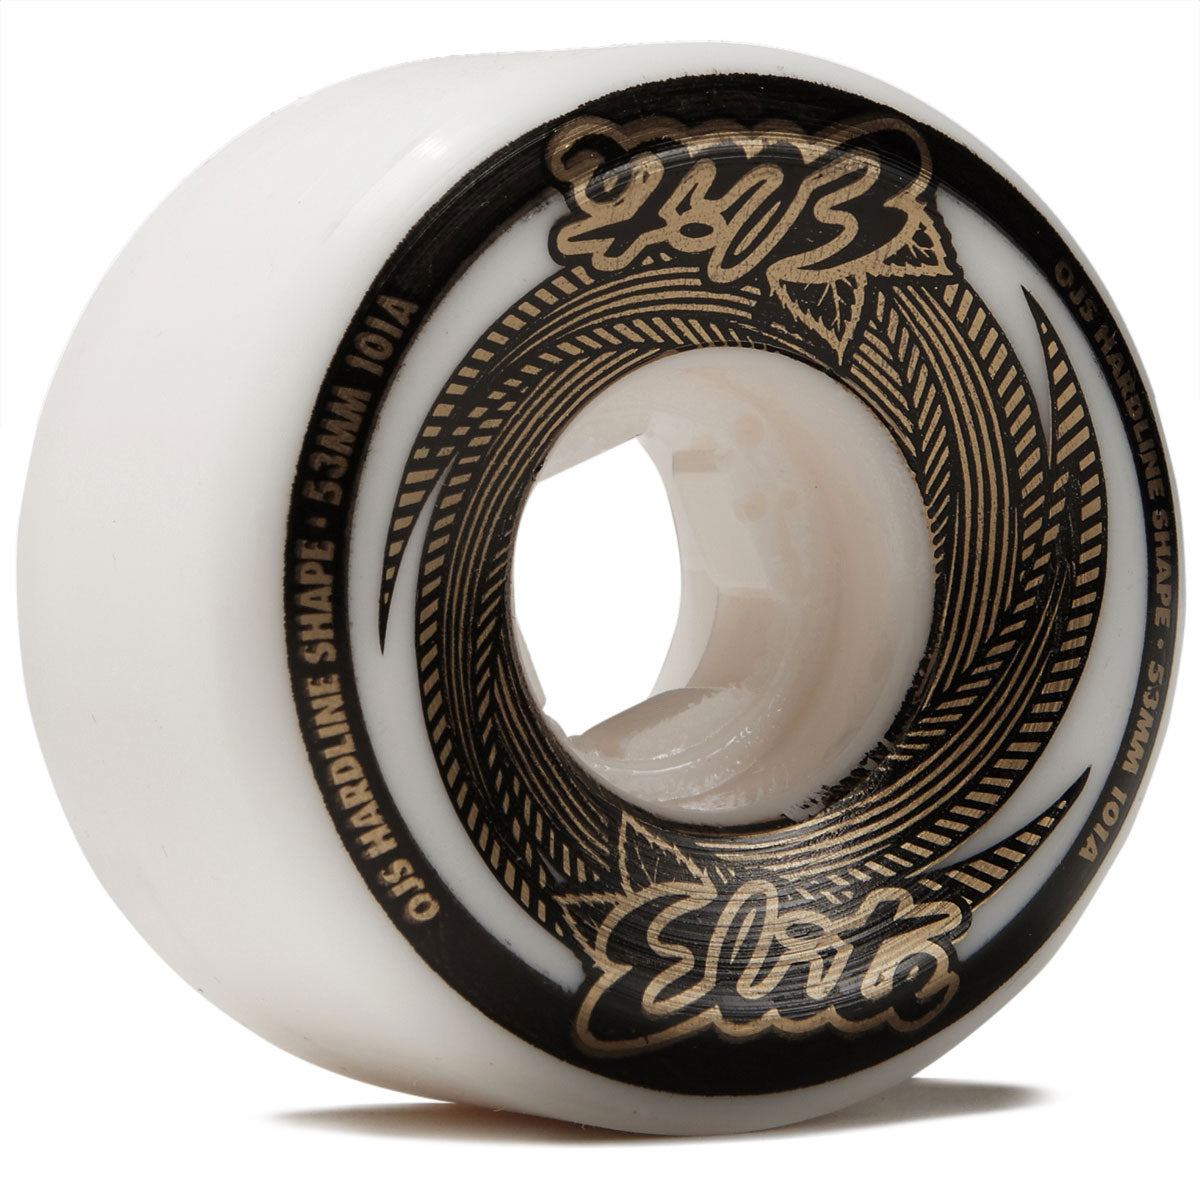 OJ Elite Hardline 101a Skateboard Wheels - White/Gold - 53mm image 1